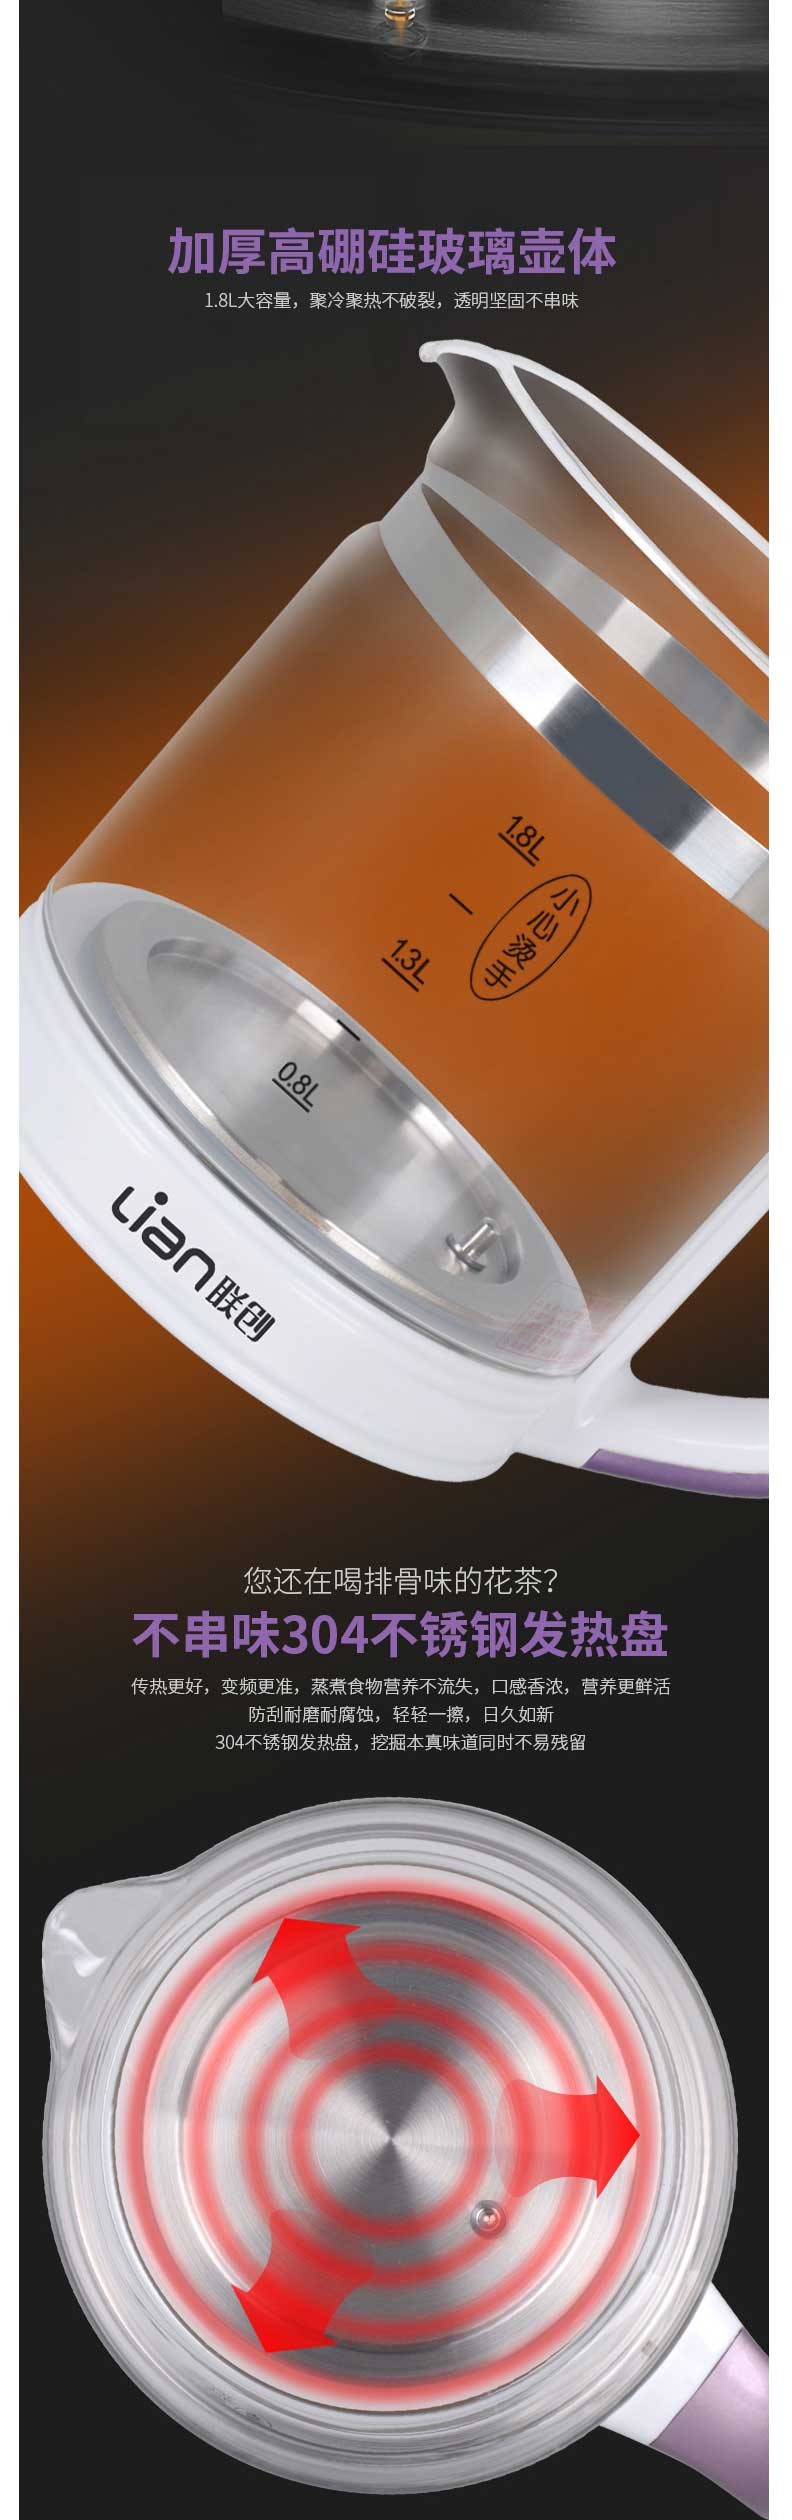 联创/Lianc 养生壶全自动加厚玻璃多功能电热烧水壶花茶壶煮茶DF-EP0823M 1.8L容量